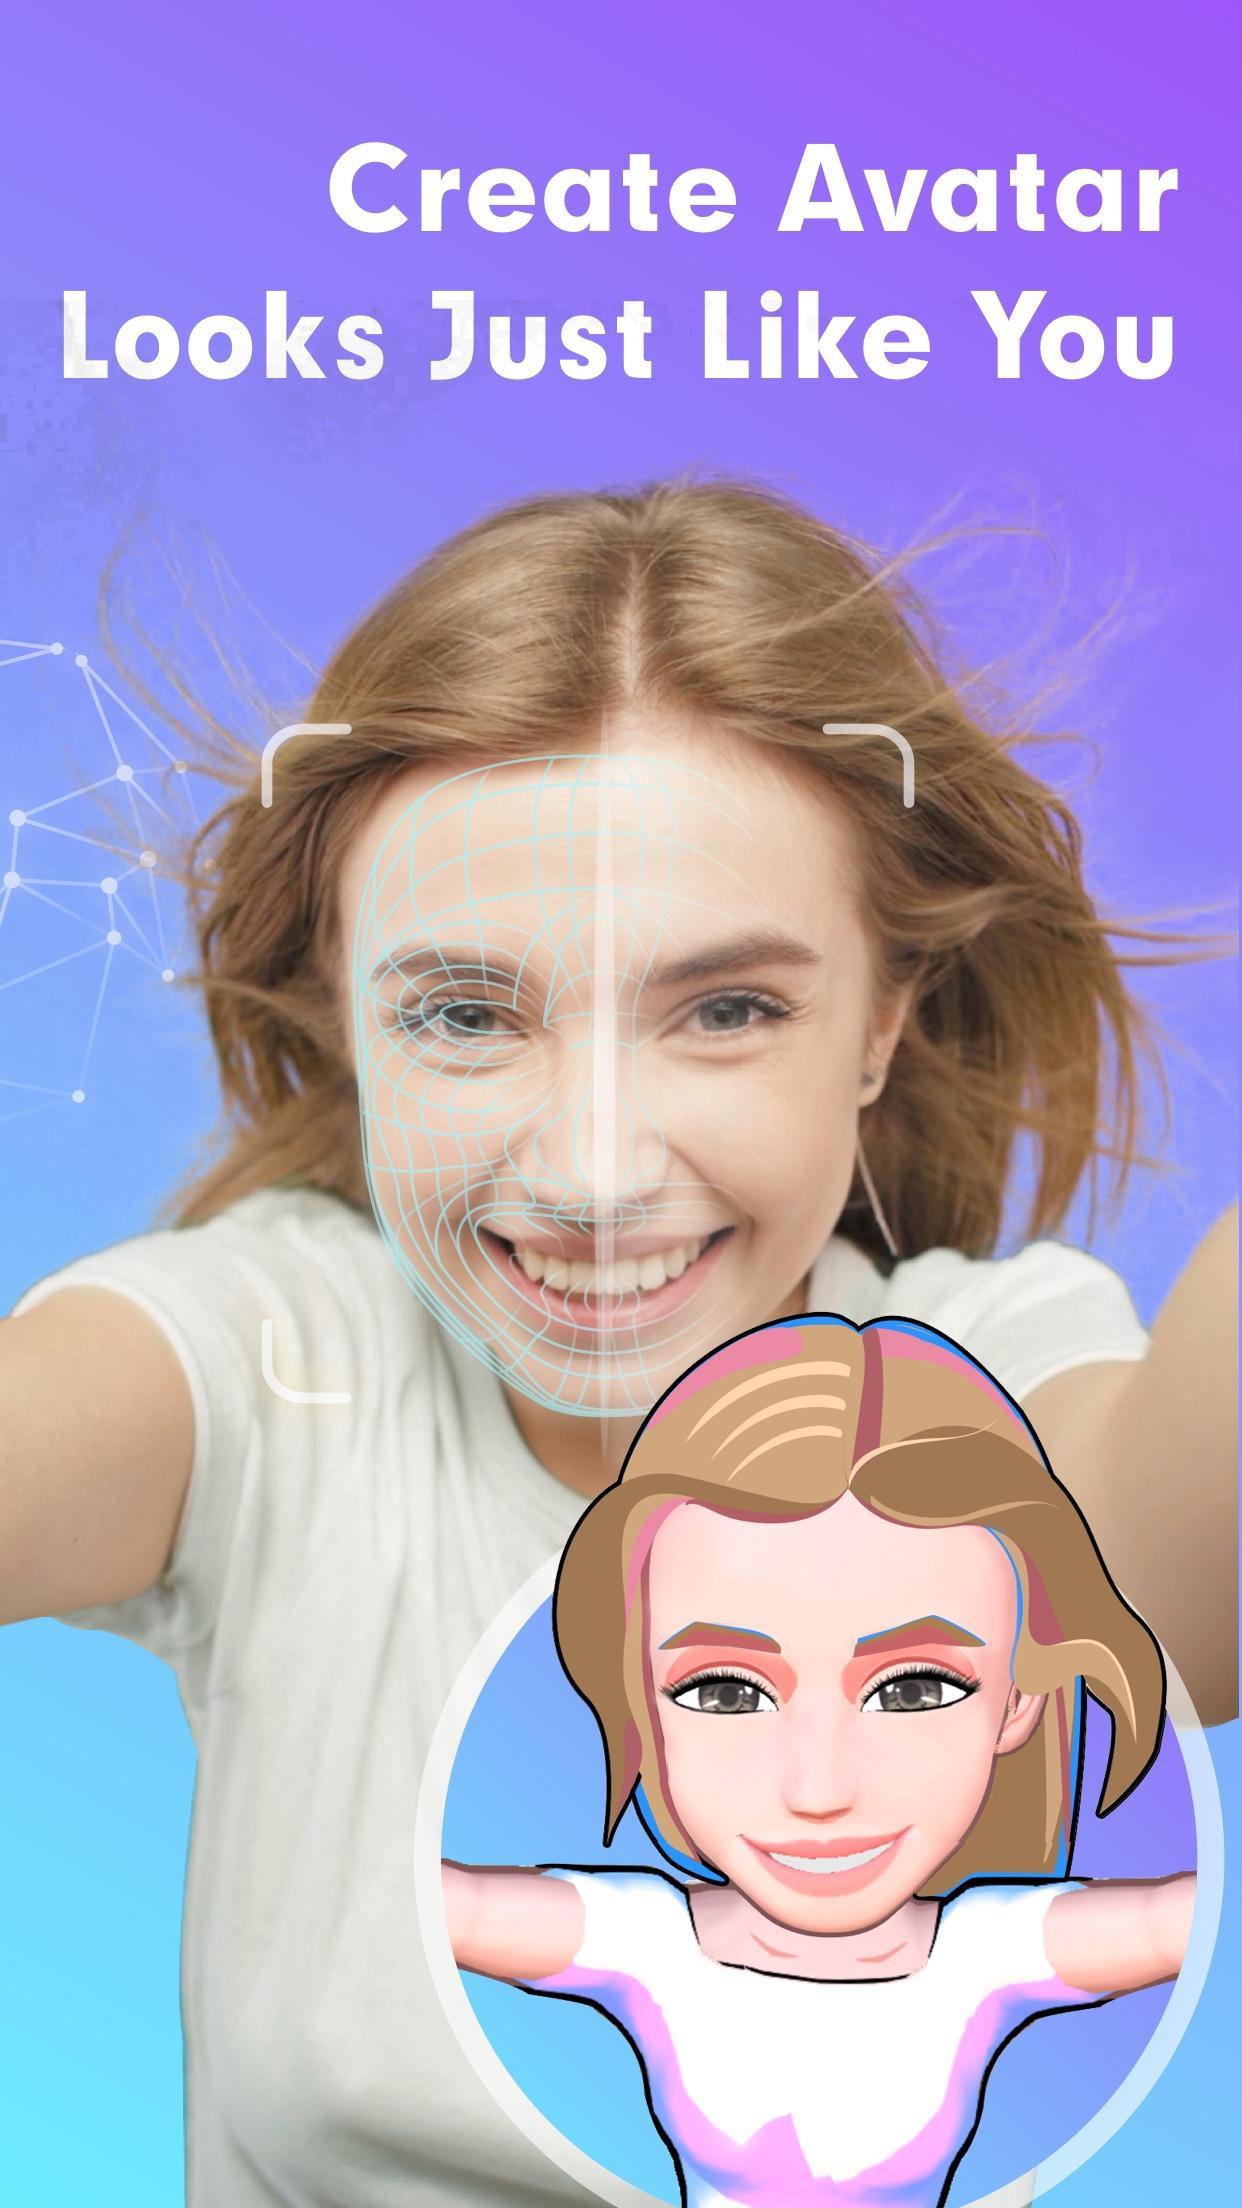 Nếu bạn đang sử dụng điện thoại Android, hãy tải ngay ứng dụng tạo avatar 3D để sáng tạo những bức ảnh đẹp lung linh. Với nhiều tính năng độc đáo và nhân vật avatar phong phú, bạn sẽ không thể rời mắt khi sử dụng ứng dụng này.